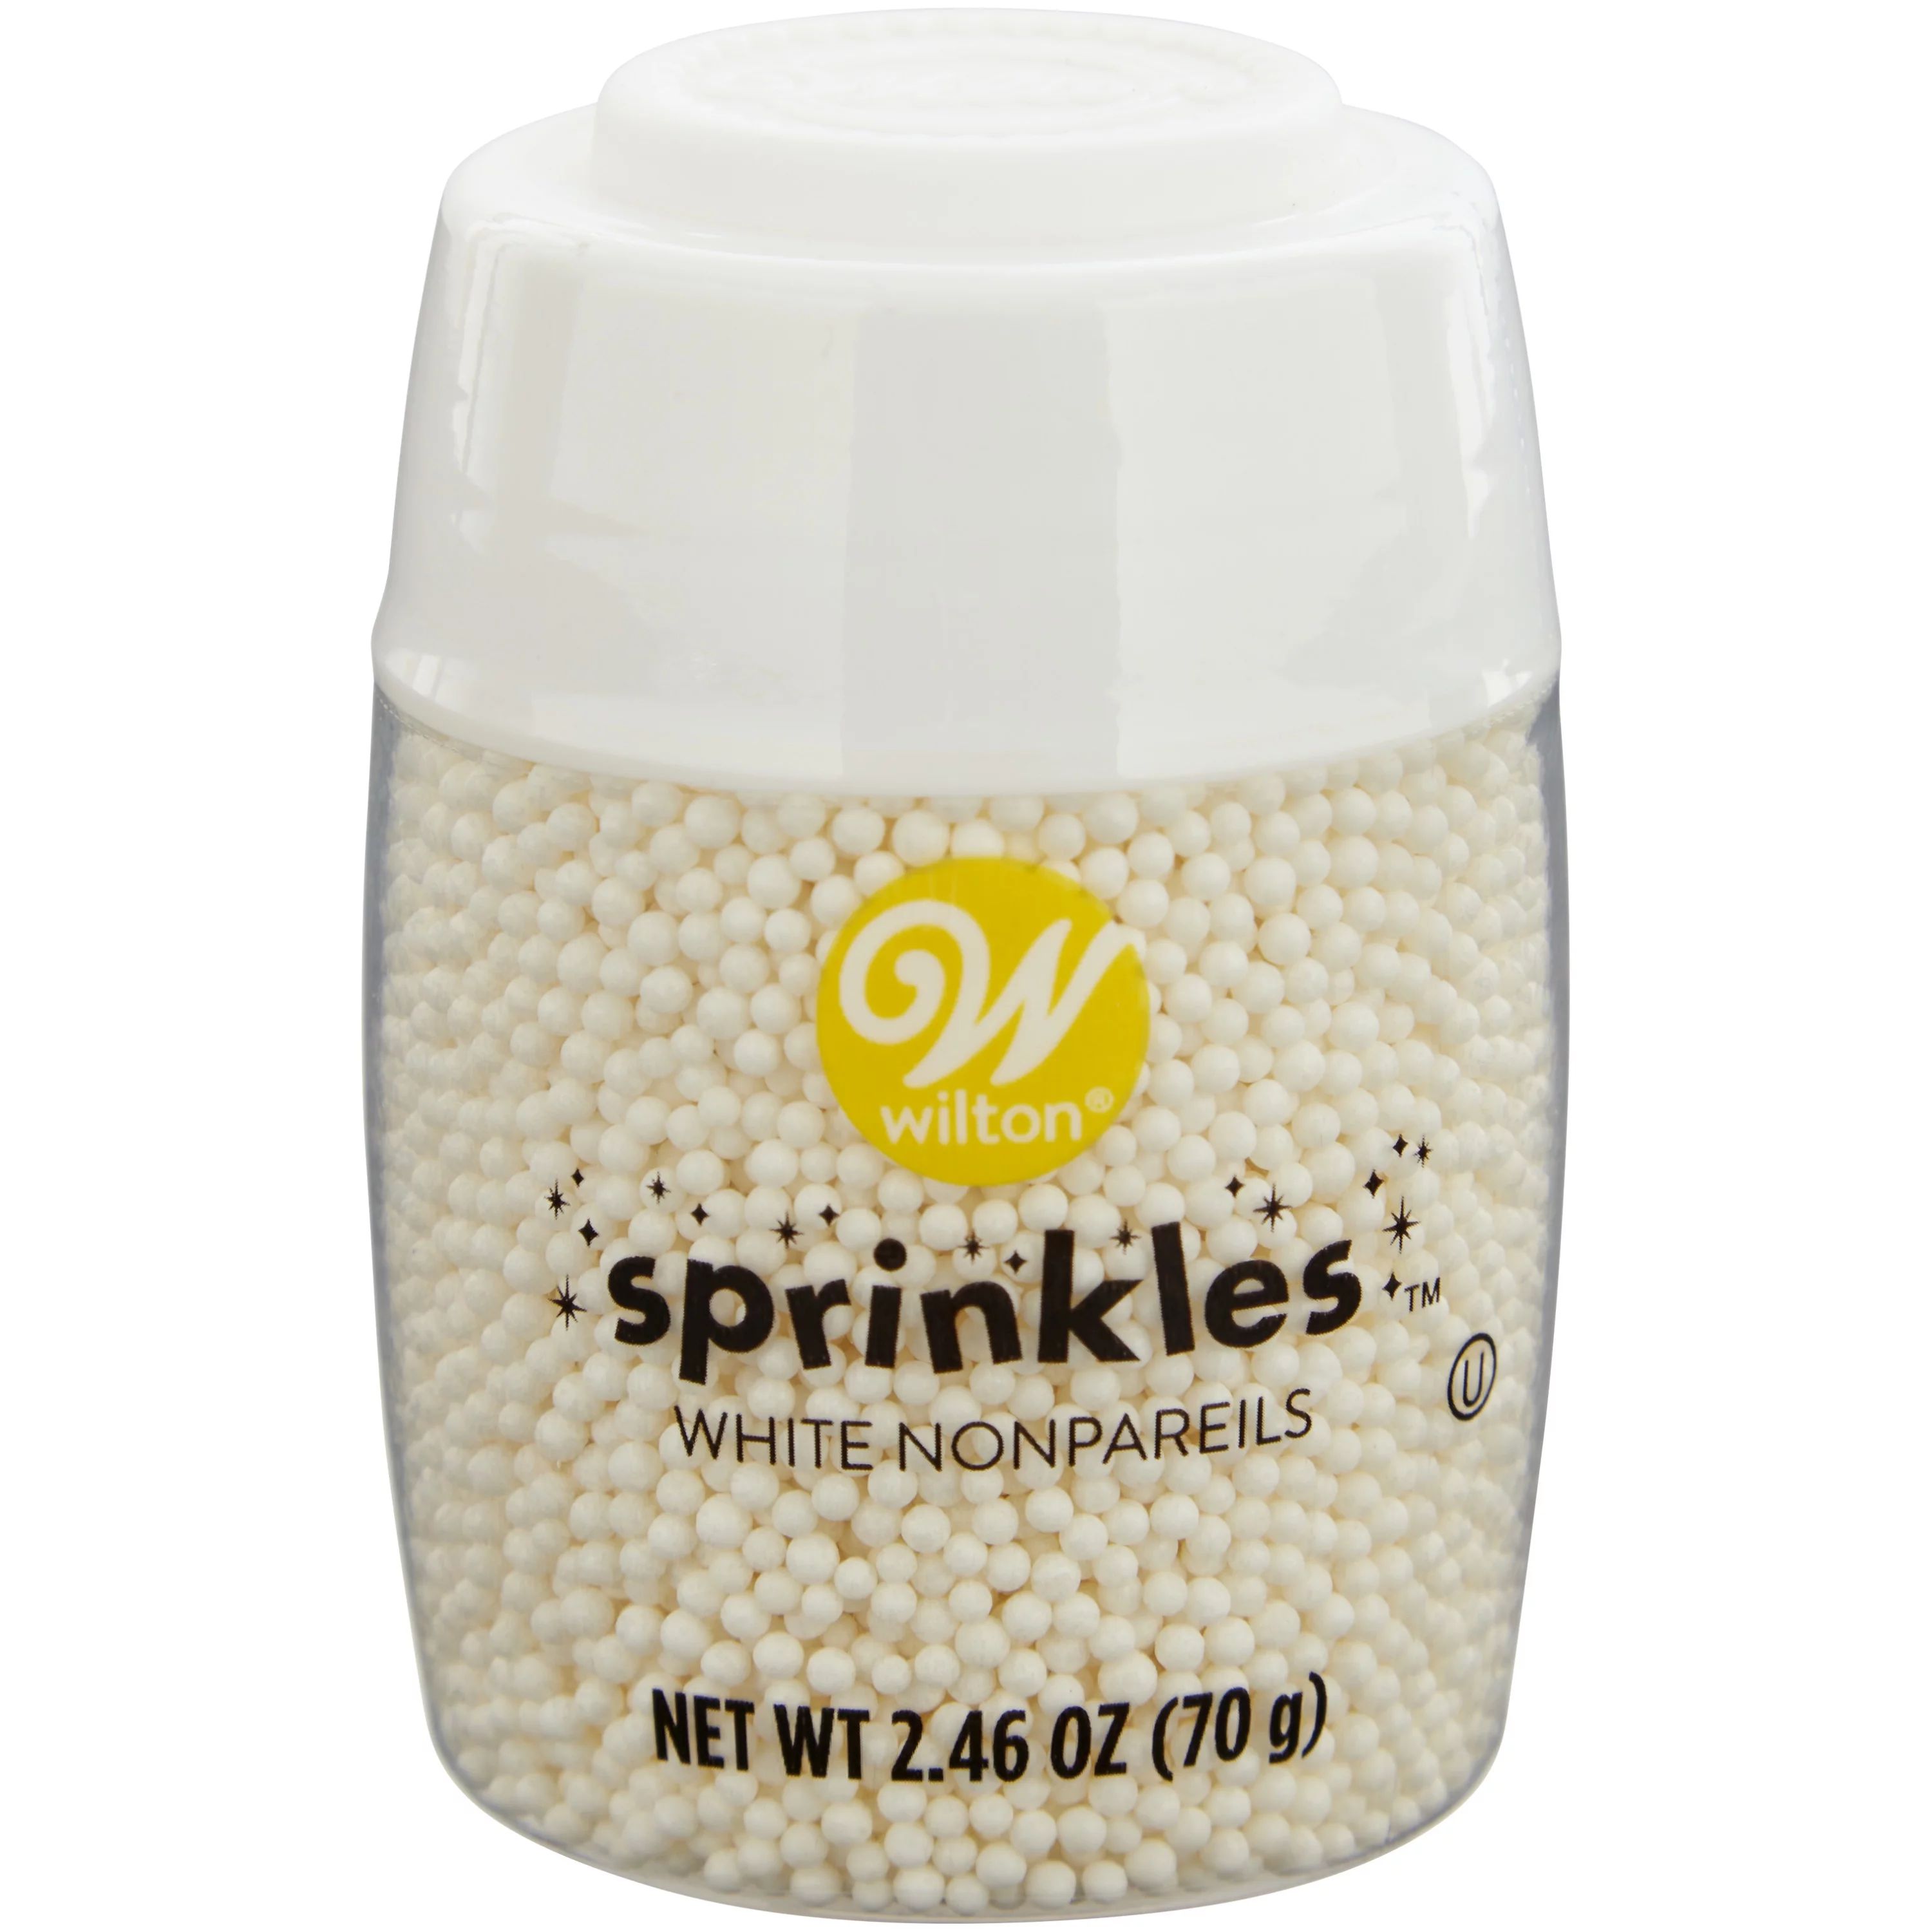 Wilton White Nonpareils Sprinkles, 2.46 oz. - Walmart.com | Walmart (US)